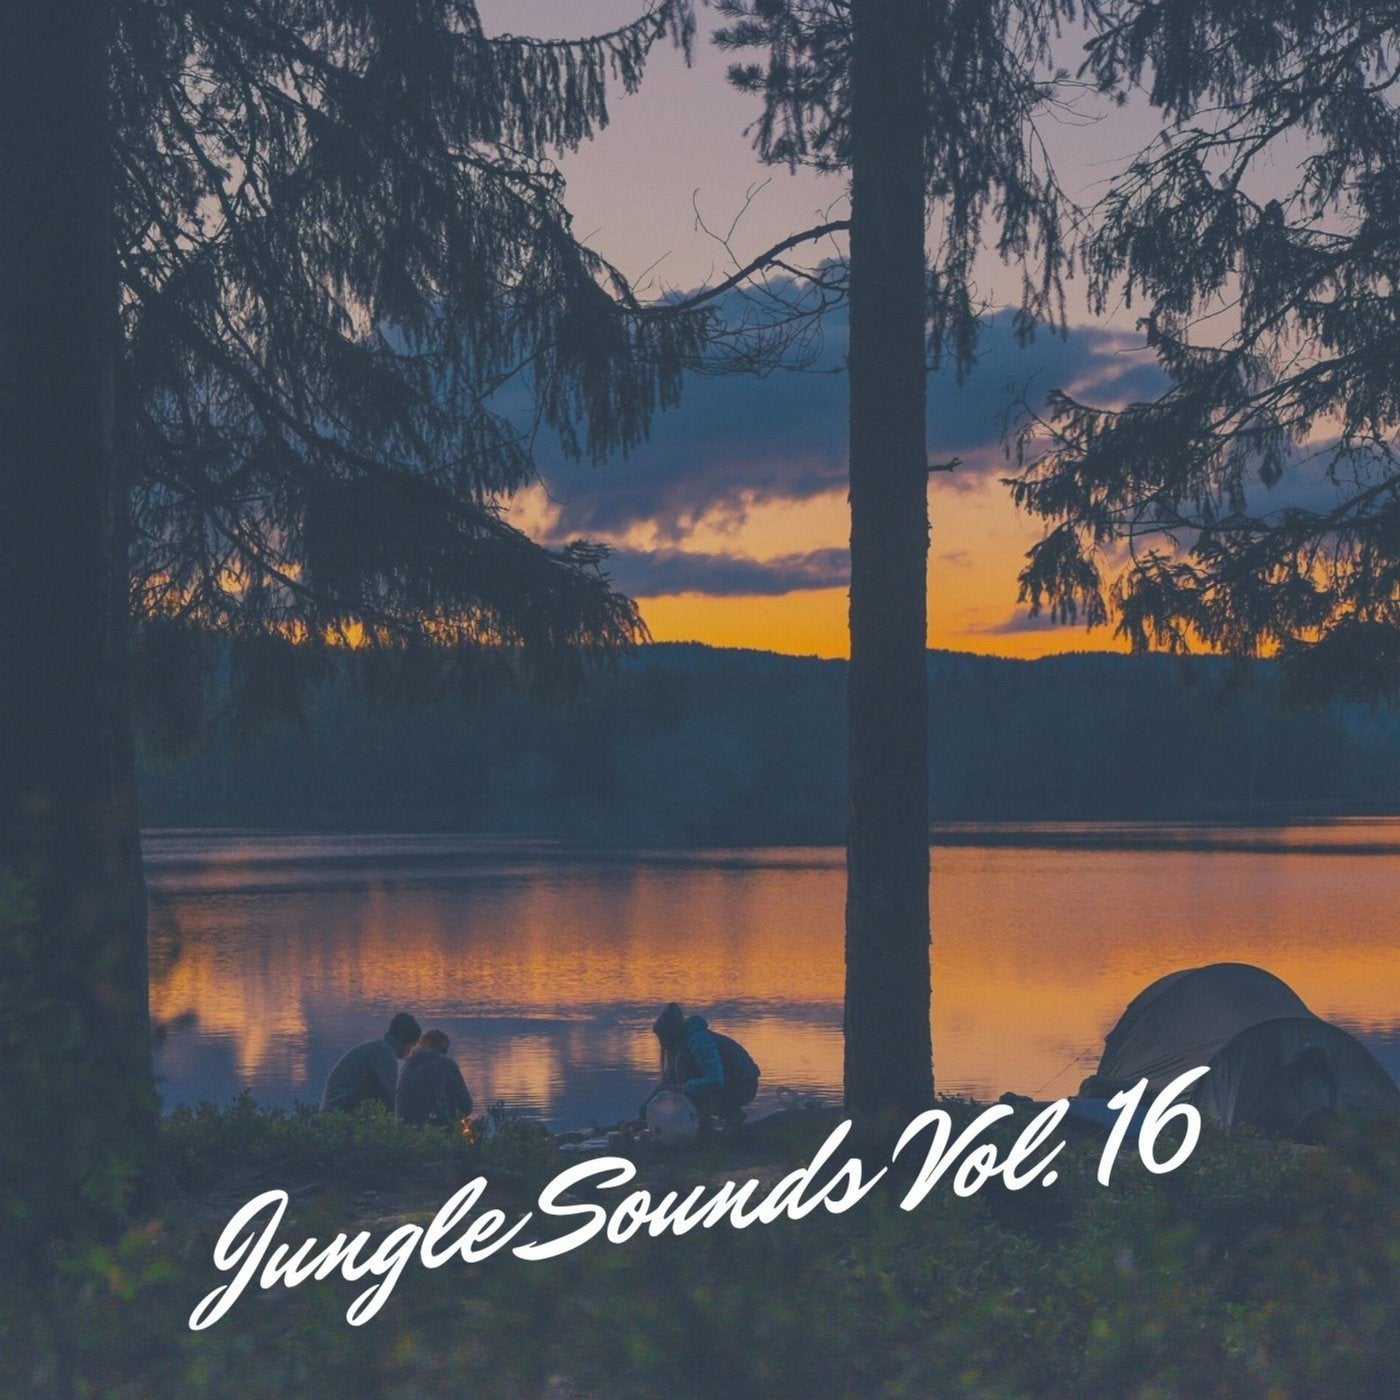 Jungle Sounds Vol. 16